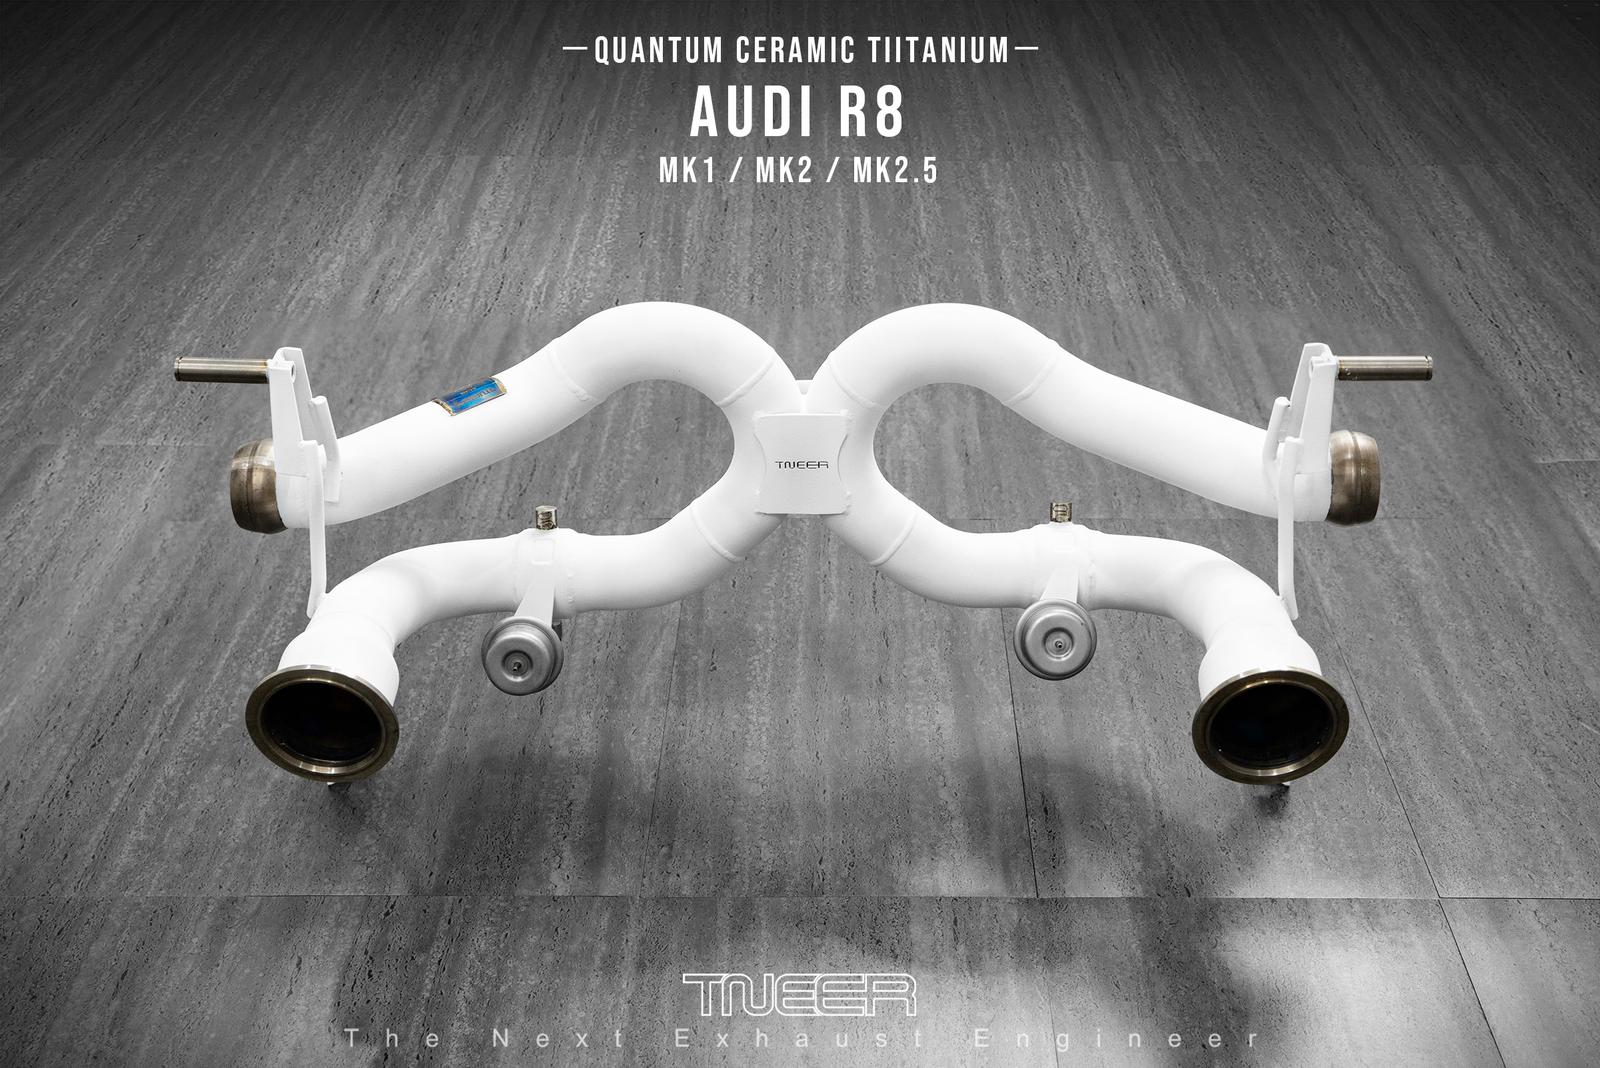 AUDI R8 (MK1) V10 TNEER Quantum Ceramic Titanium Race Exhaust (Special Edition)